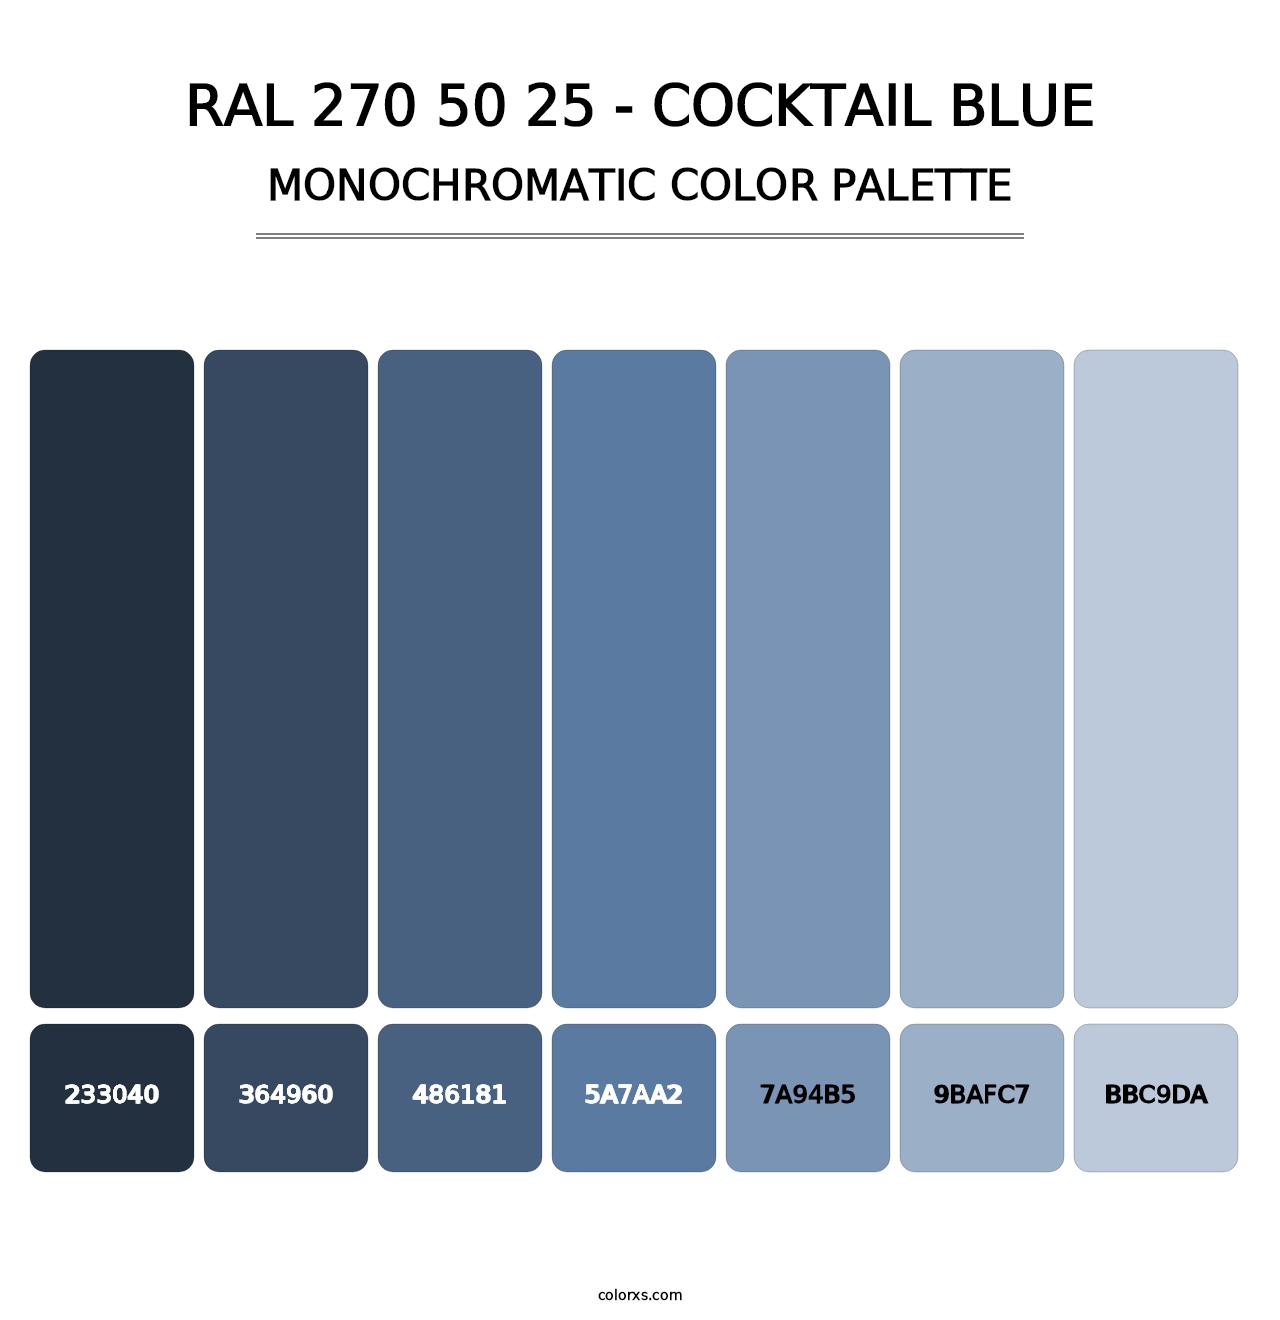 RAL 270 50 25 - Cocktail Blue - Monochromatic Color Palette